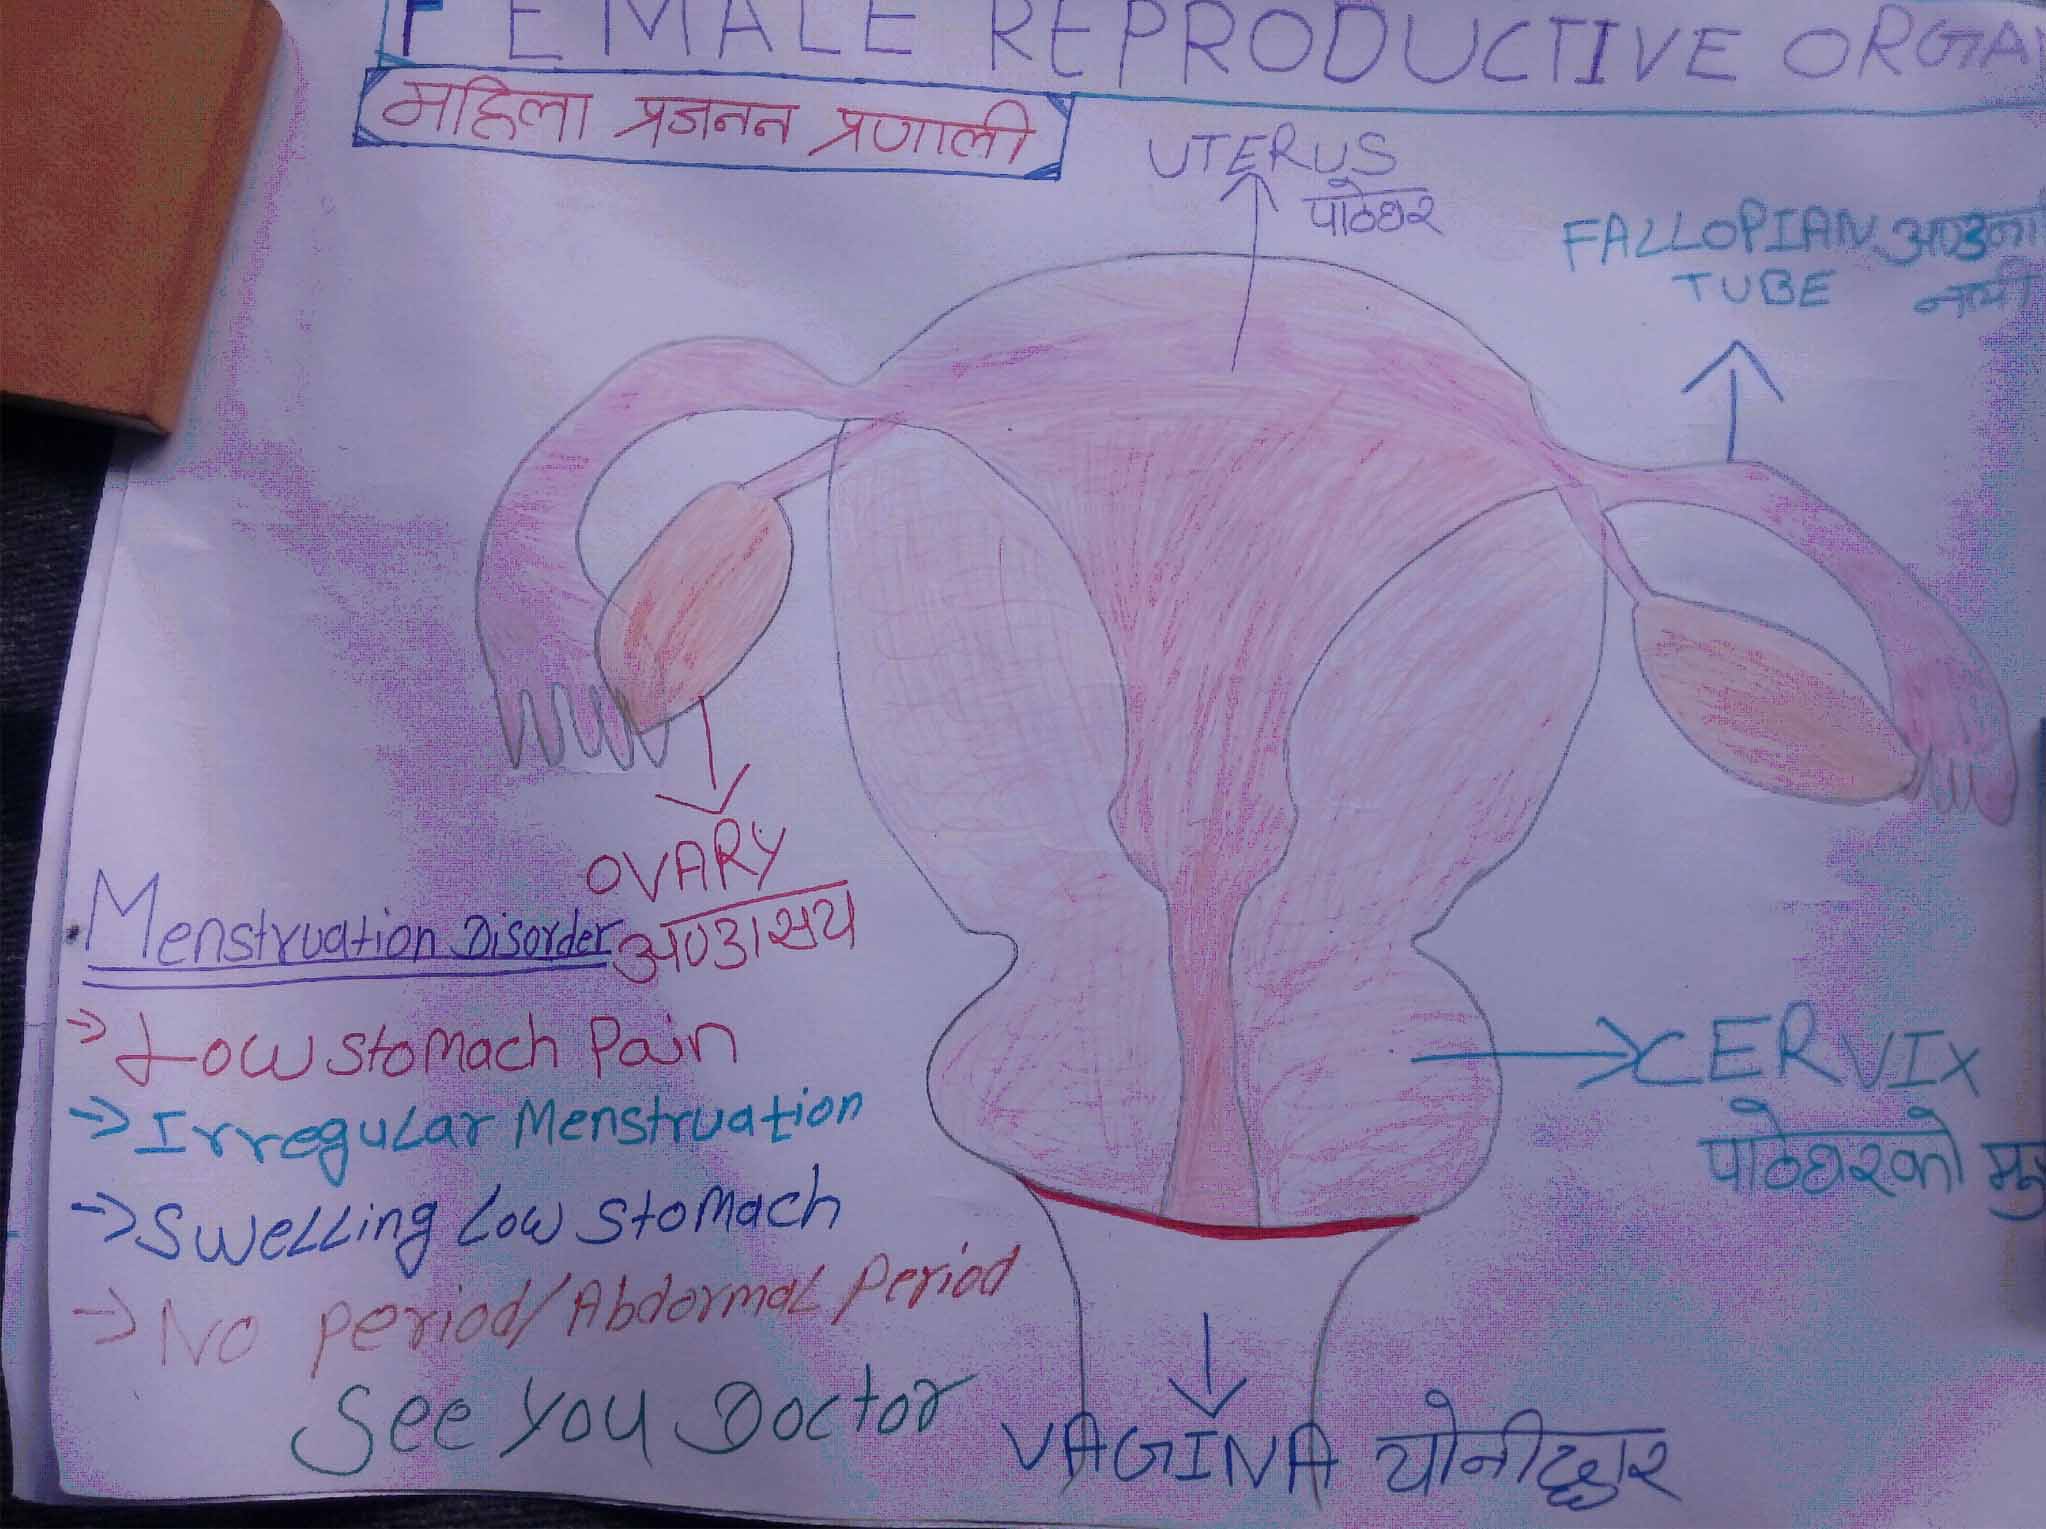 Reproductive Organ